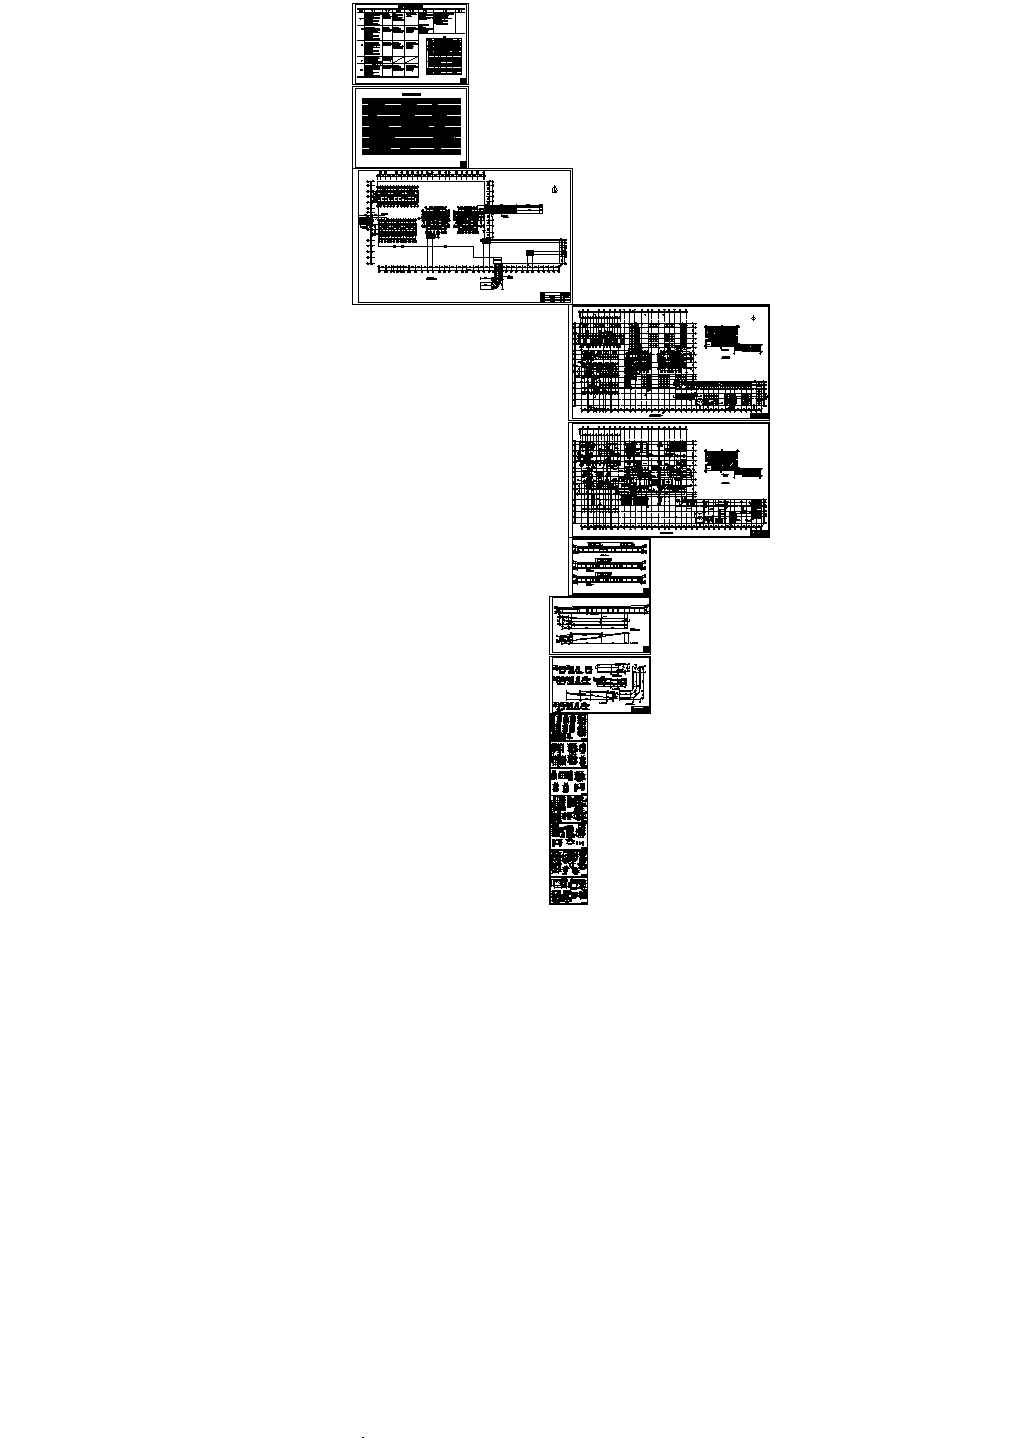 9945㎡-1+1层框架住宅式宾馆建筑人防施工图